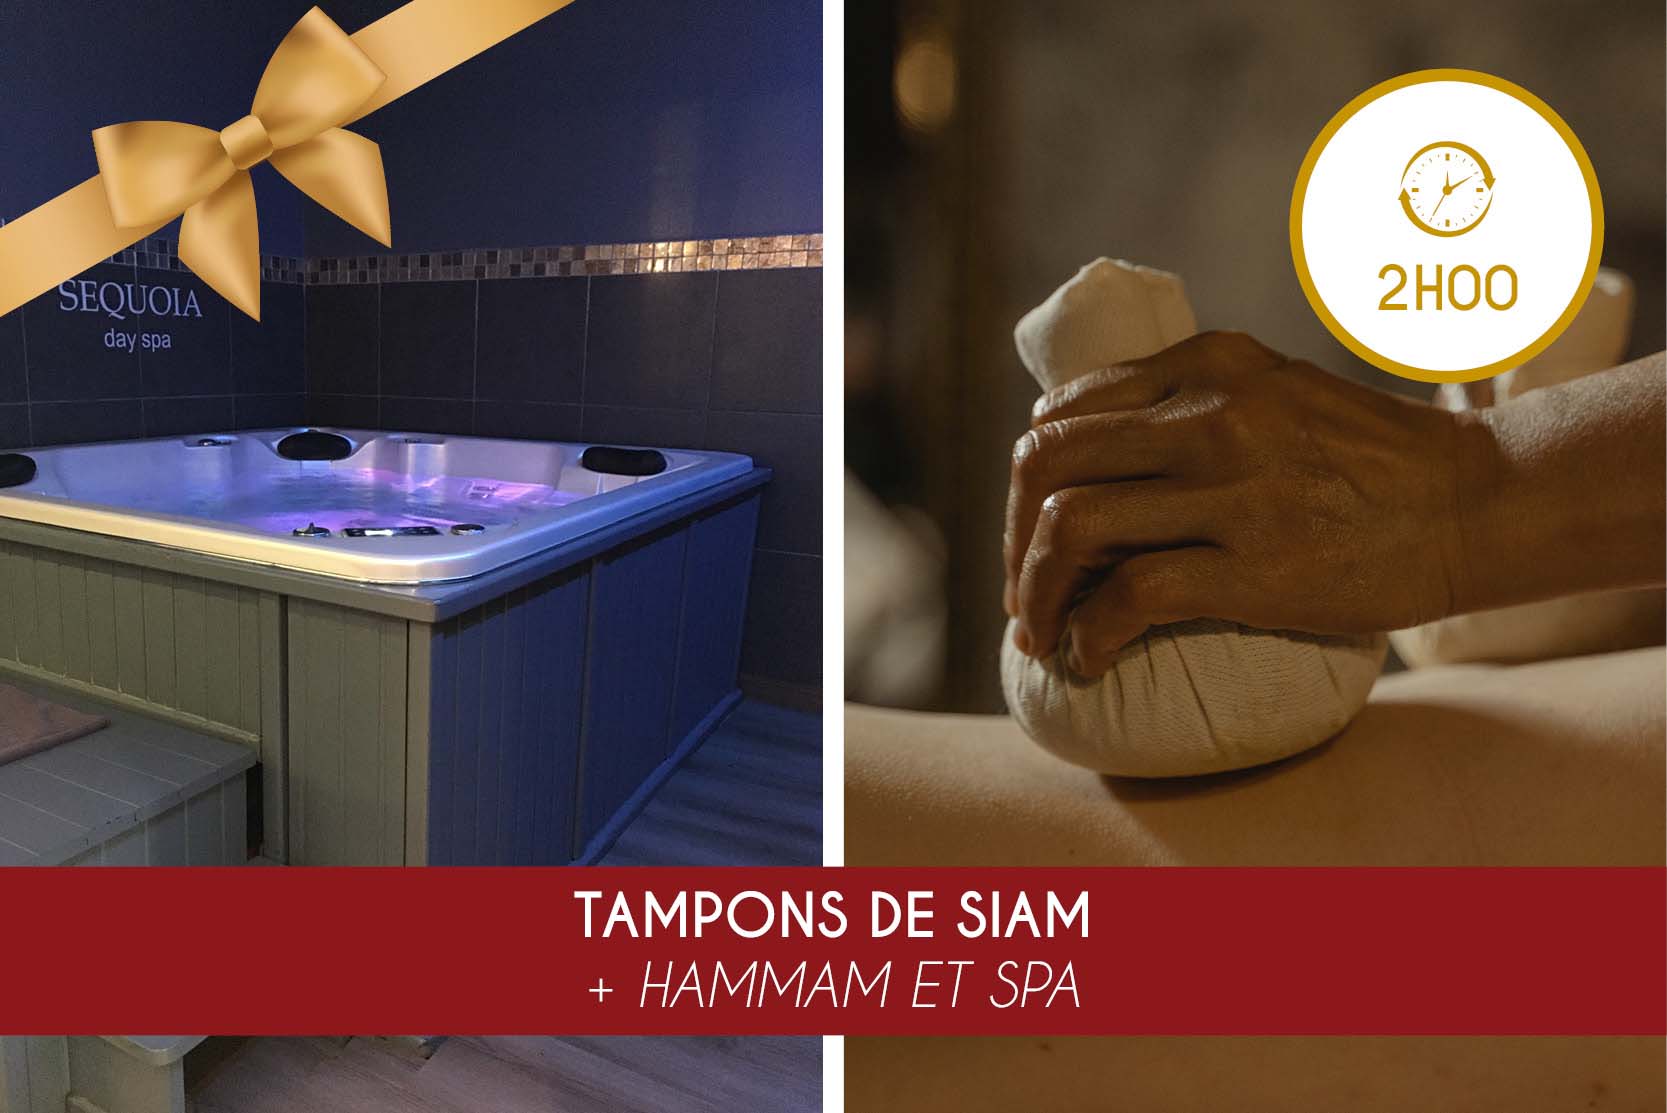 TAMPONS DE SIAM (1H00) + HAMMAM ET SPA